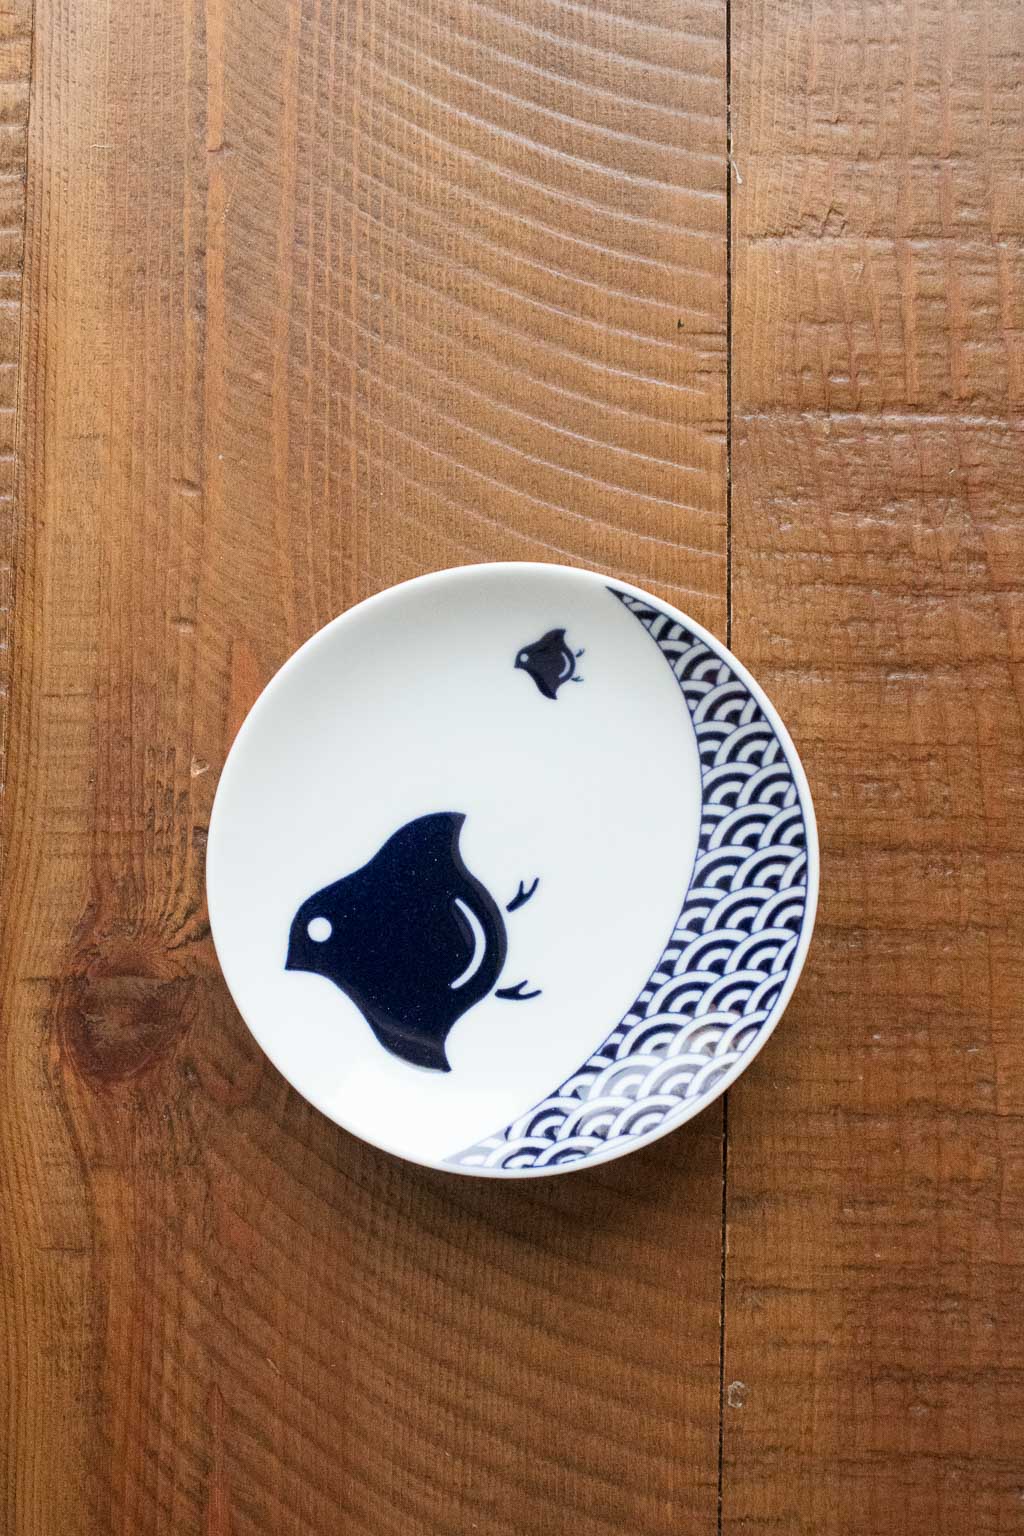 Kihara Porcelain Toronto